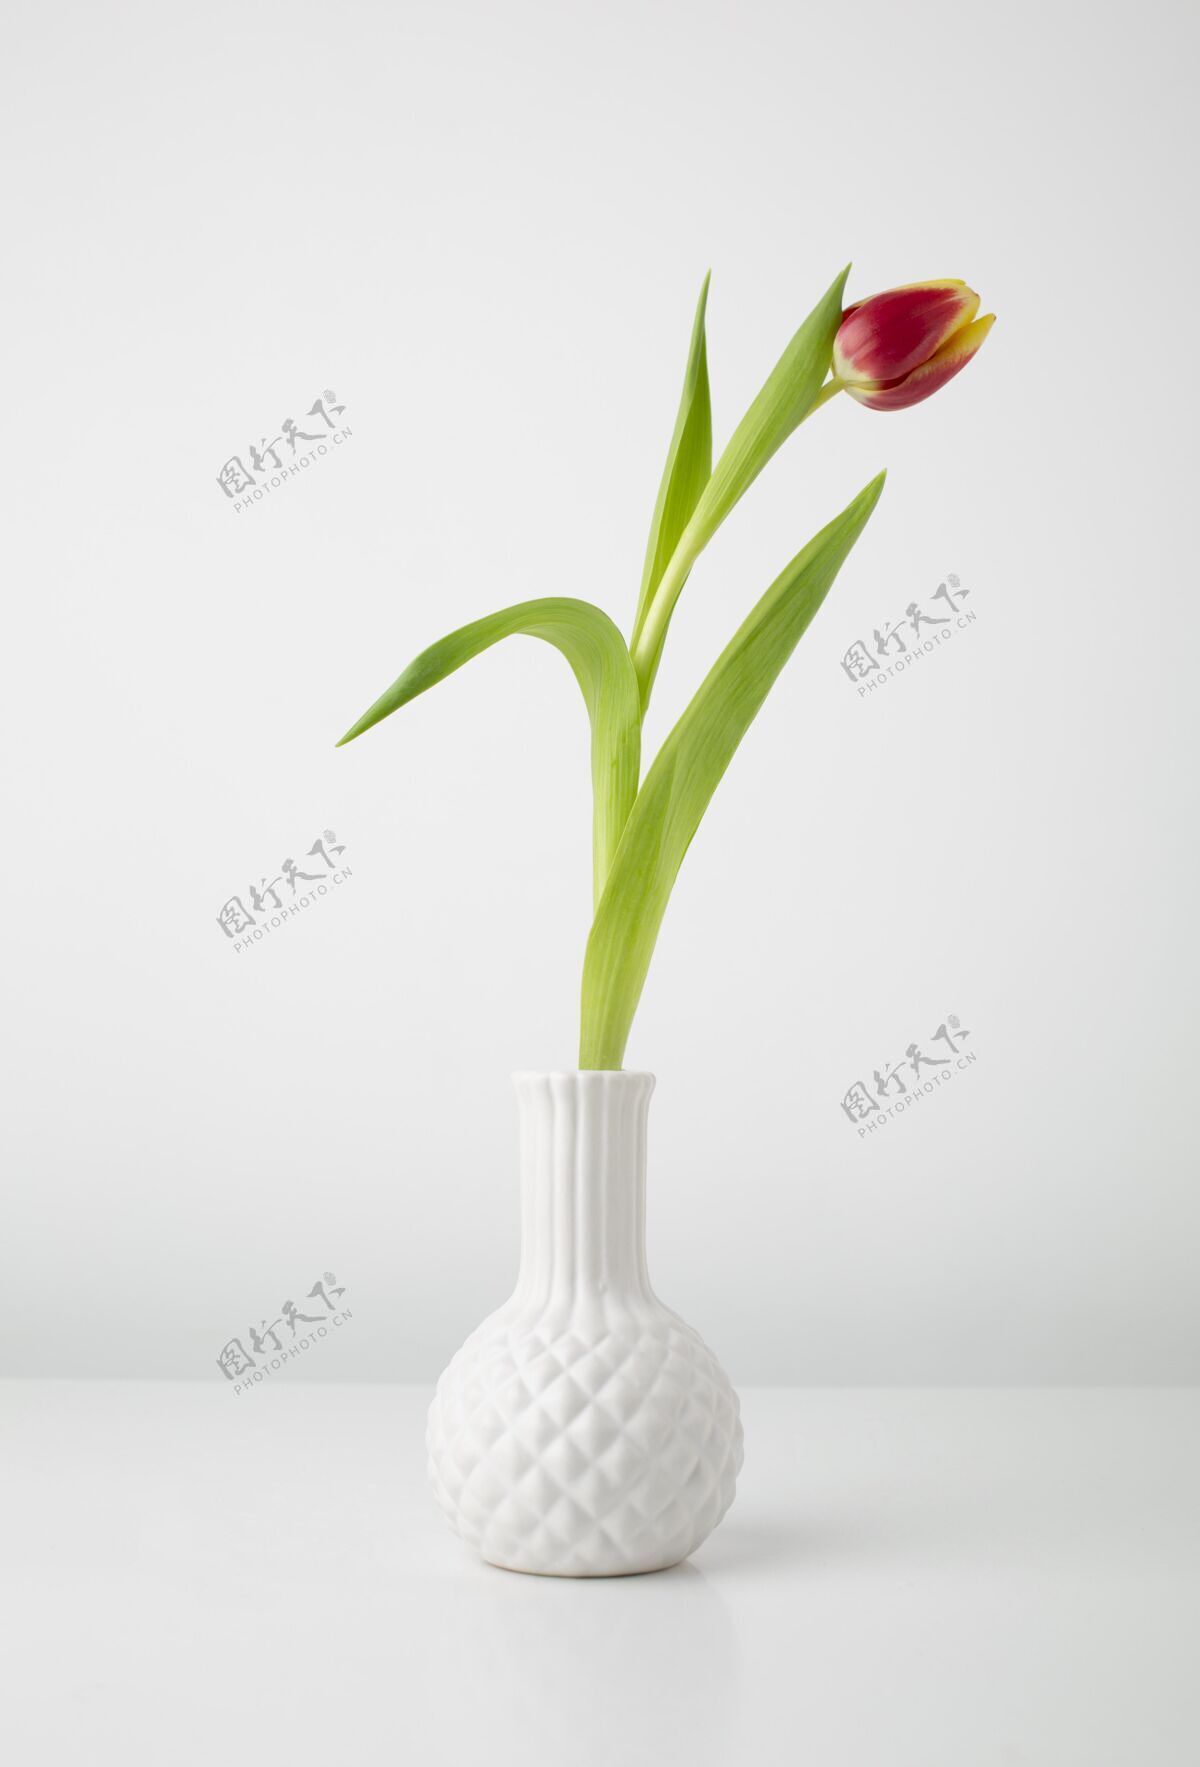 春天桌上放着郁金香花瓶春天的时间春天的花花瓶